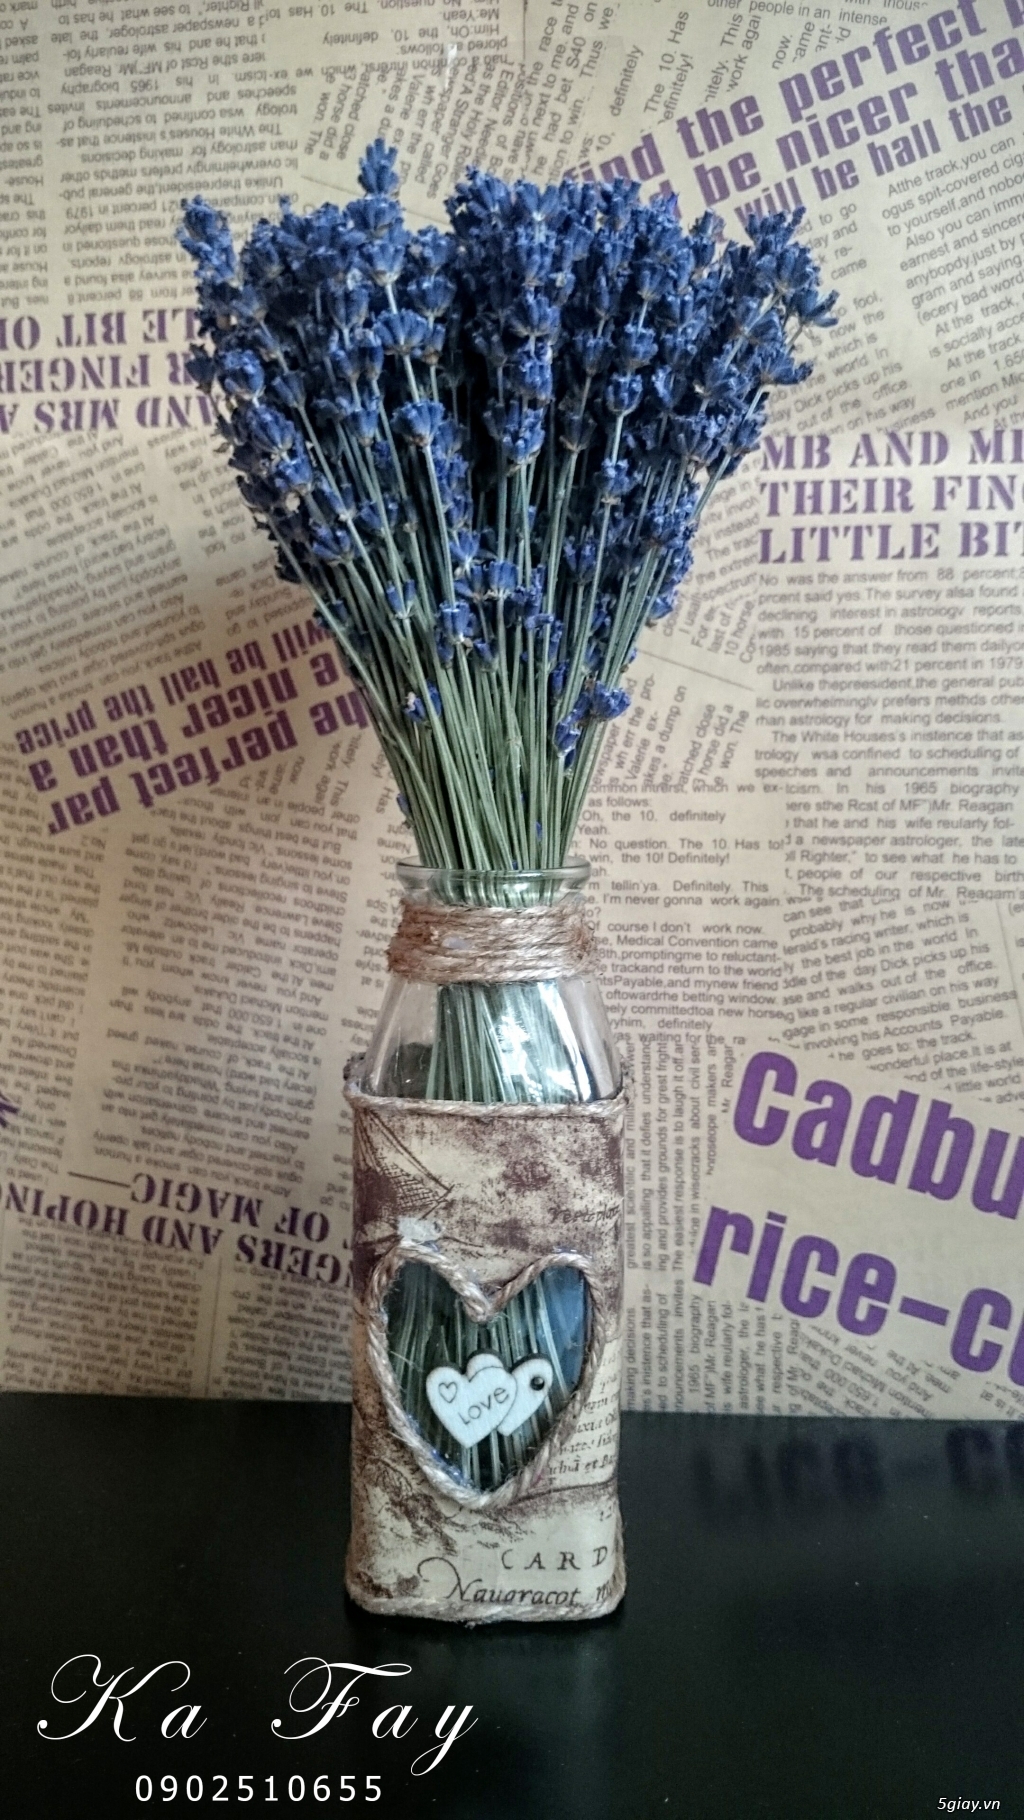 Hoa khô Lavender nhập khẩu từ pháp vs phụ kiện handmade - 5